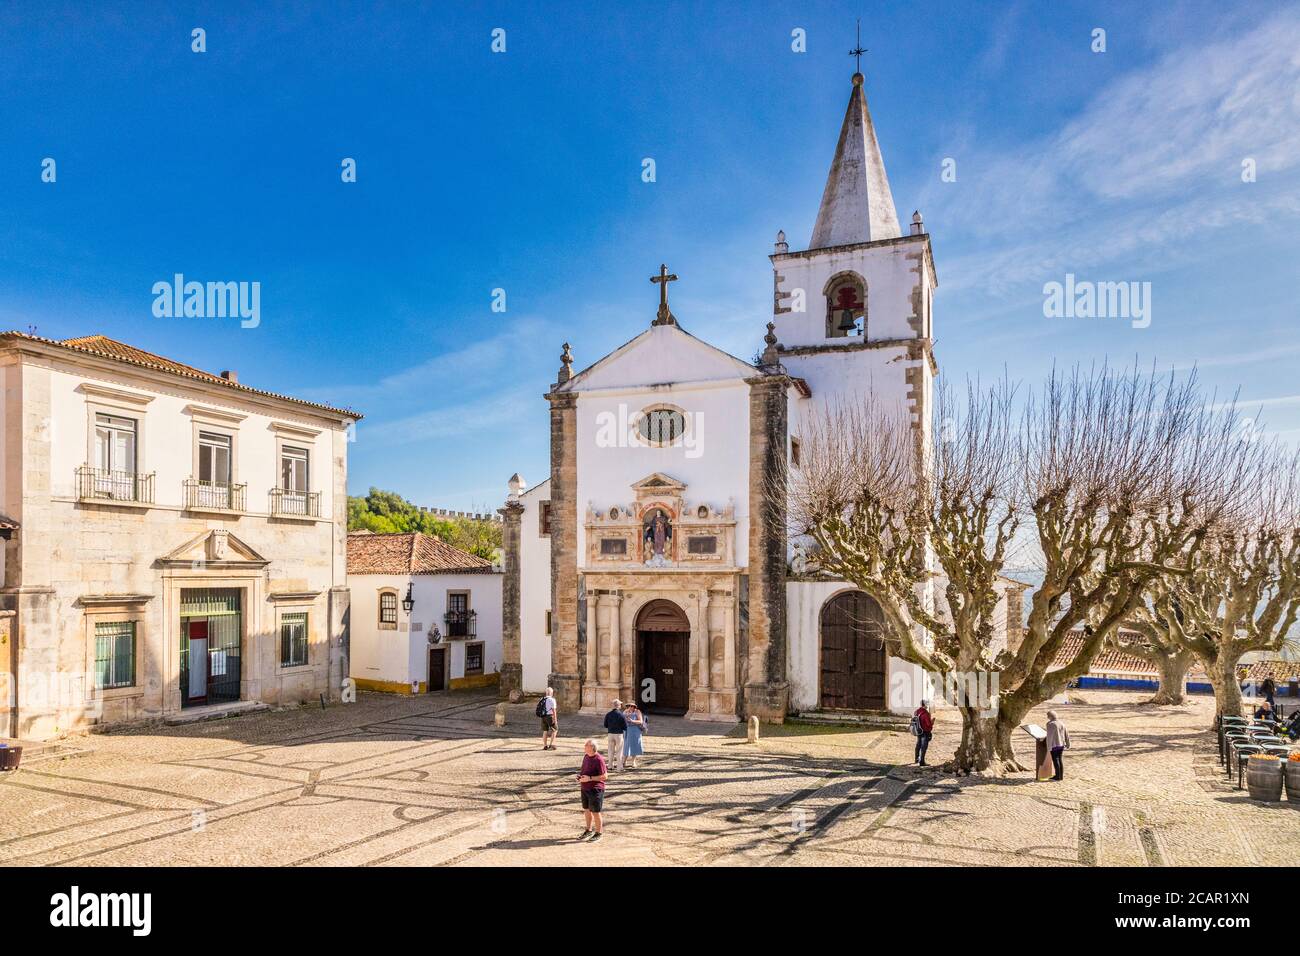 11 marzo 2020: Obidos, Portogallo - la piazza principale della città murata di Obidos, con l'Igreja de Santa Maria, la Chiesa di Santa Maria. Foto Stock